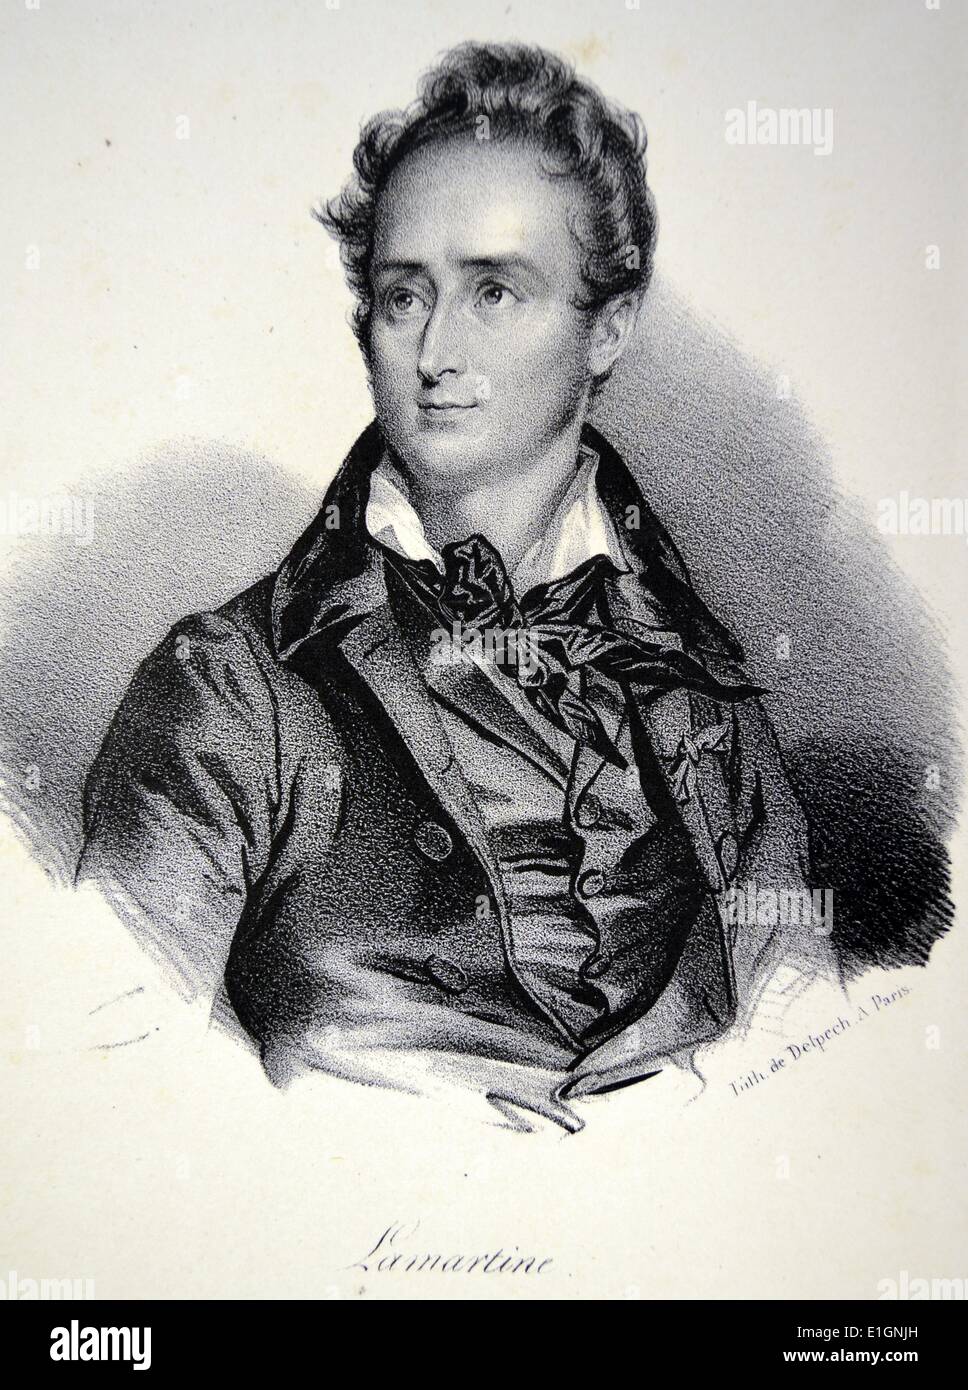 Alphonse Lamartine (1790-1869) homme politique français, écrivain et poète romantique. Lithographie, Paris, c1840. Banque D'Images